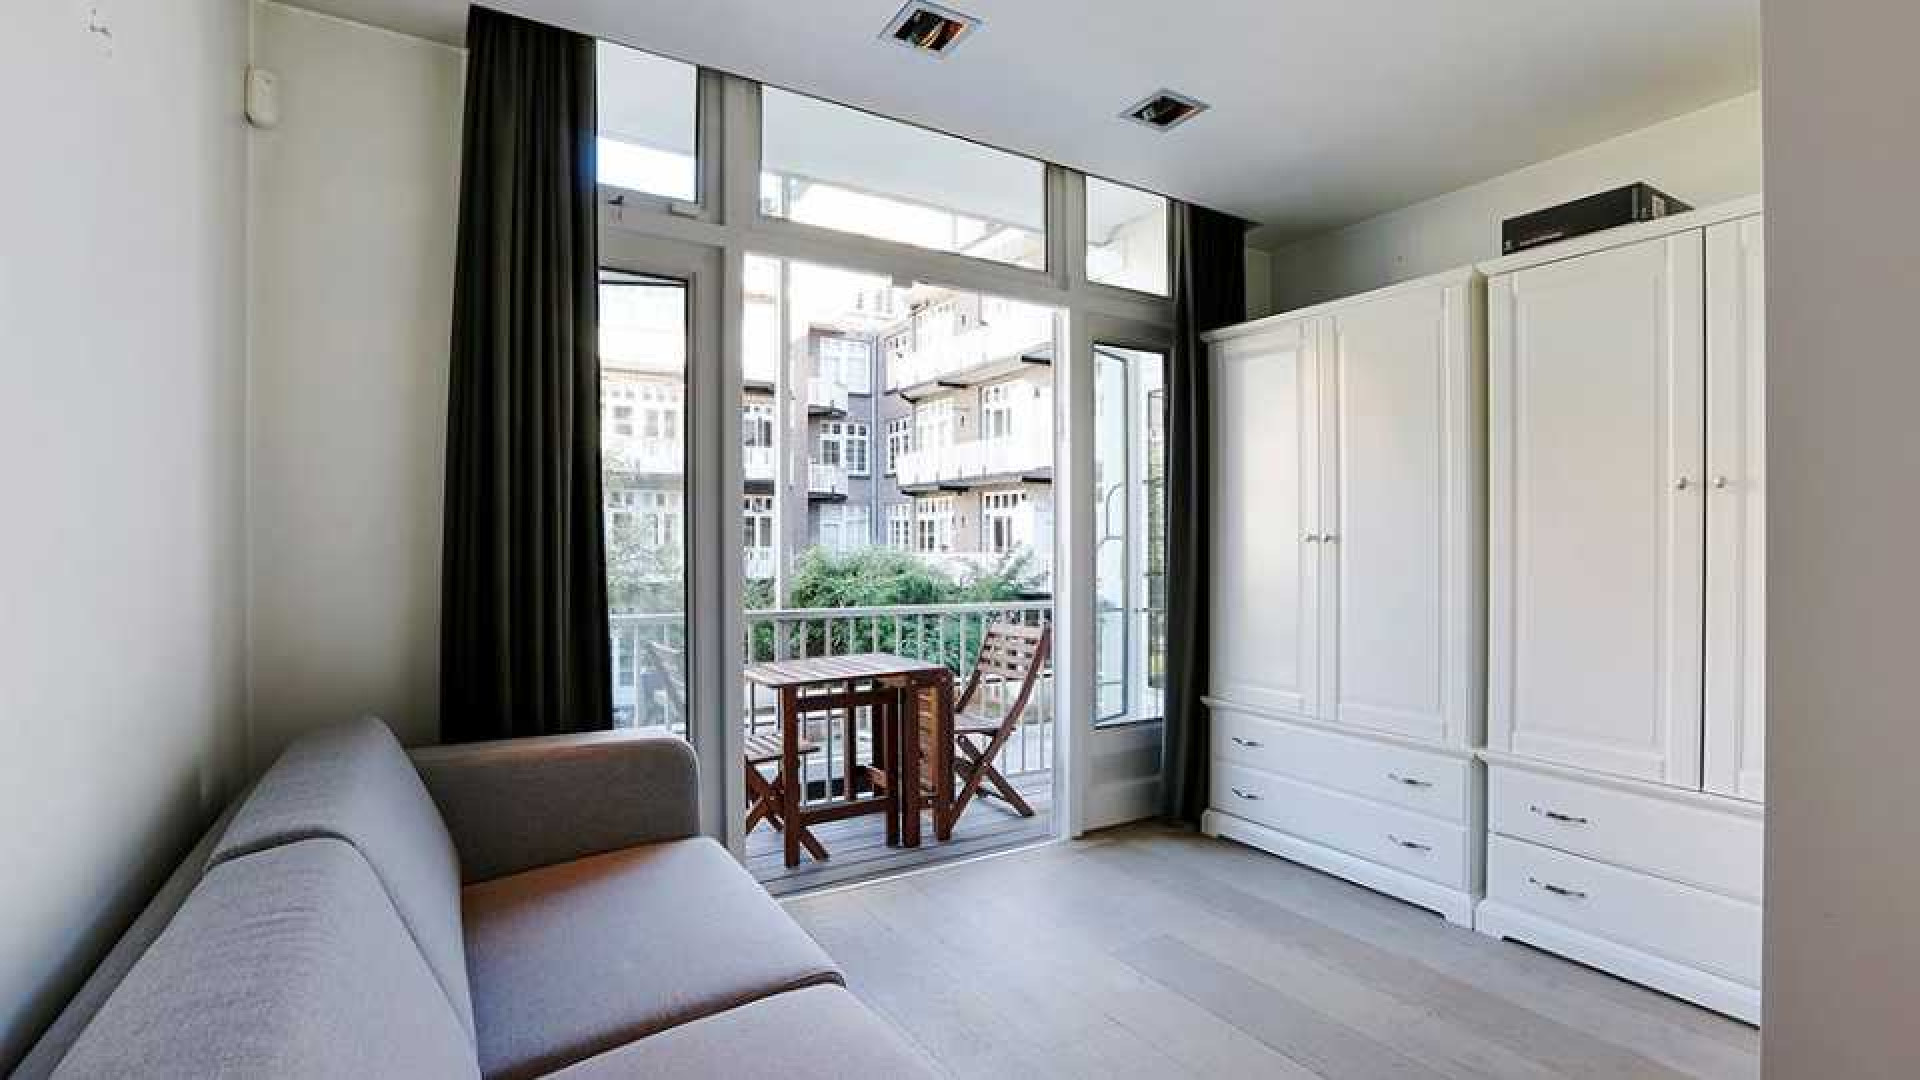 Marvin Breukhoven zoekt huurder voor zijn luxe driekamer appartement in Amsterdam Zuid. Zie foto's 7